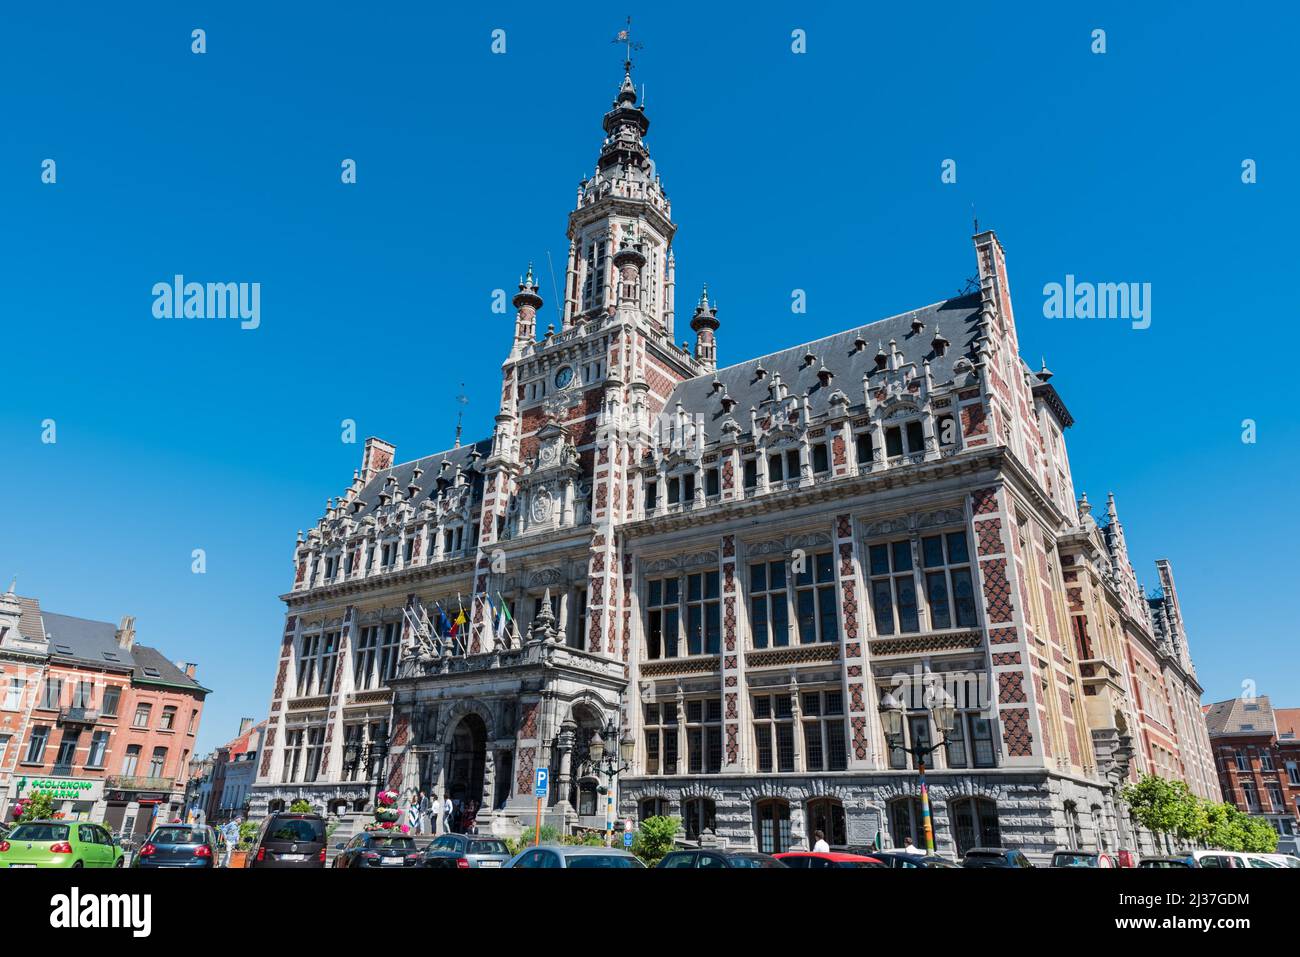 Schaerbeek, Brussels, Belgium - The facade of the town hall in Neo ...